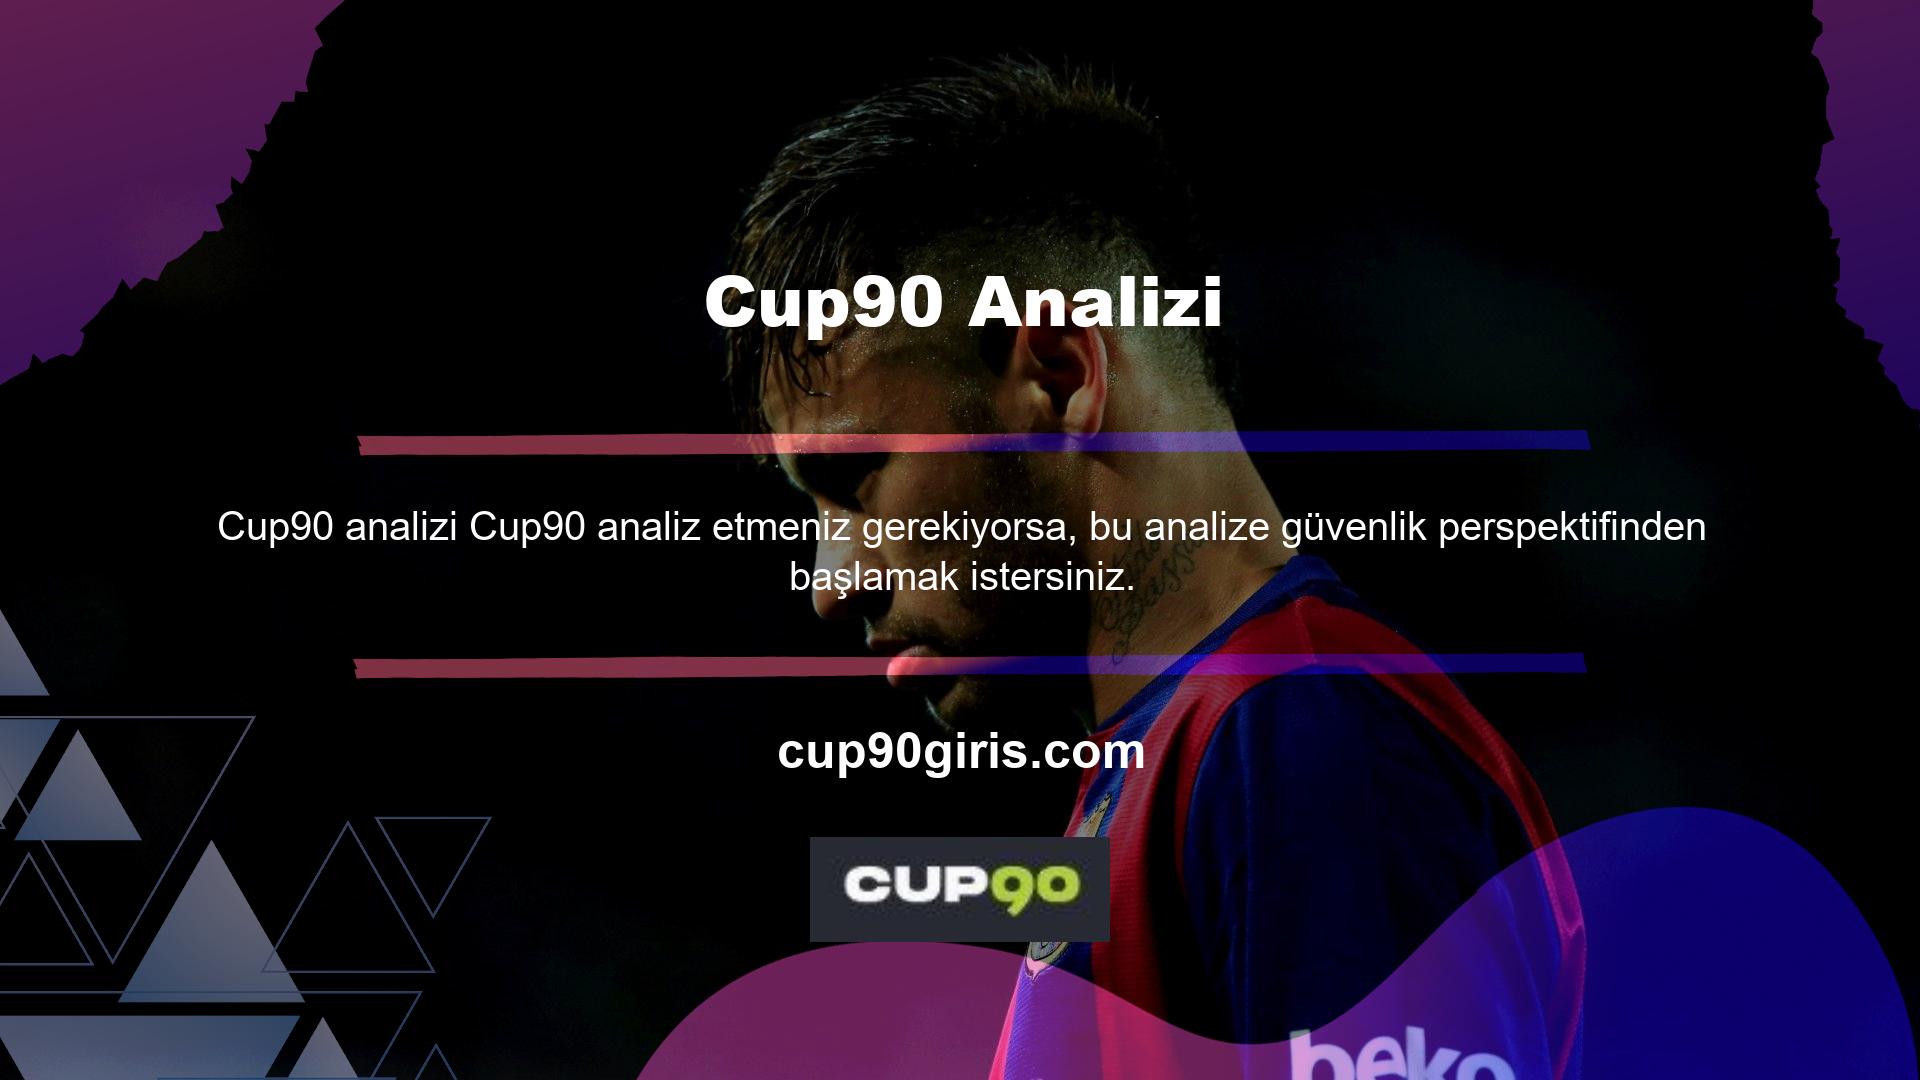 Çevrimiçi bahis sitesi Cup90, güvenilirlik konusunda olağanüstü önlemler almaktadır